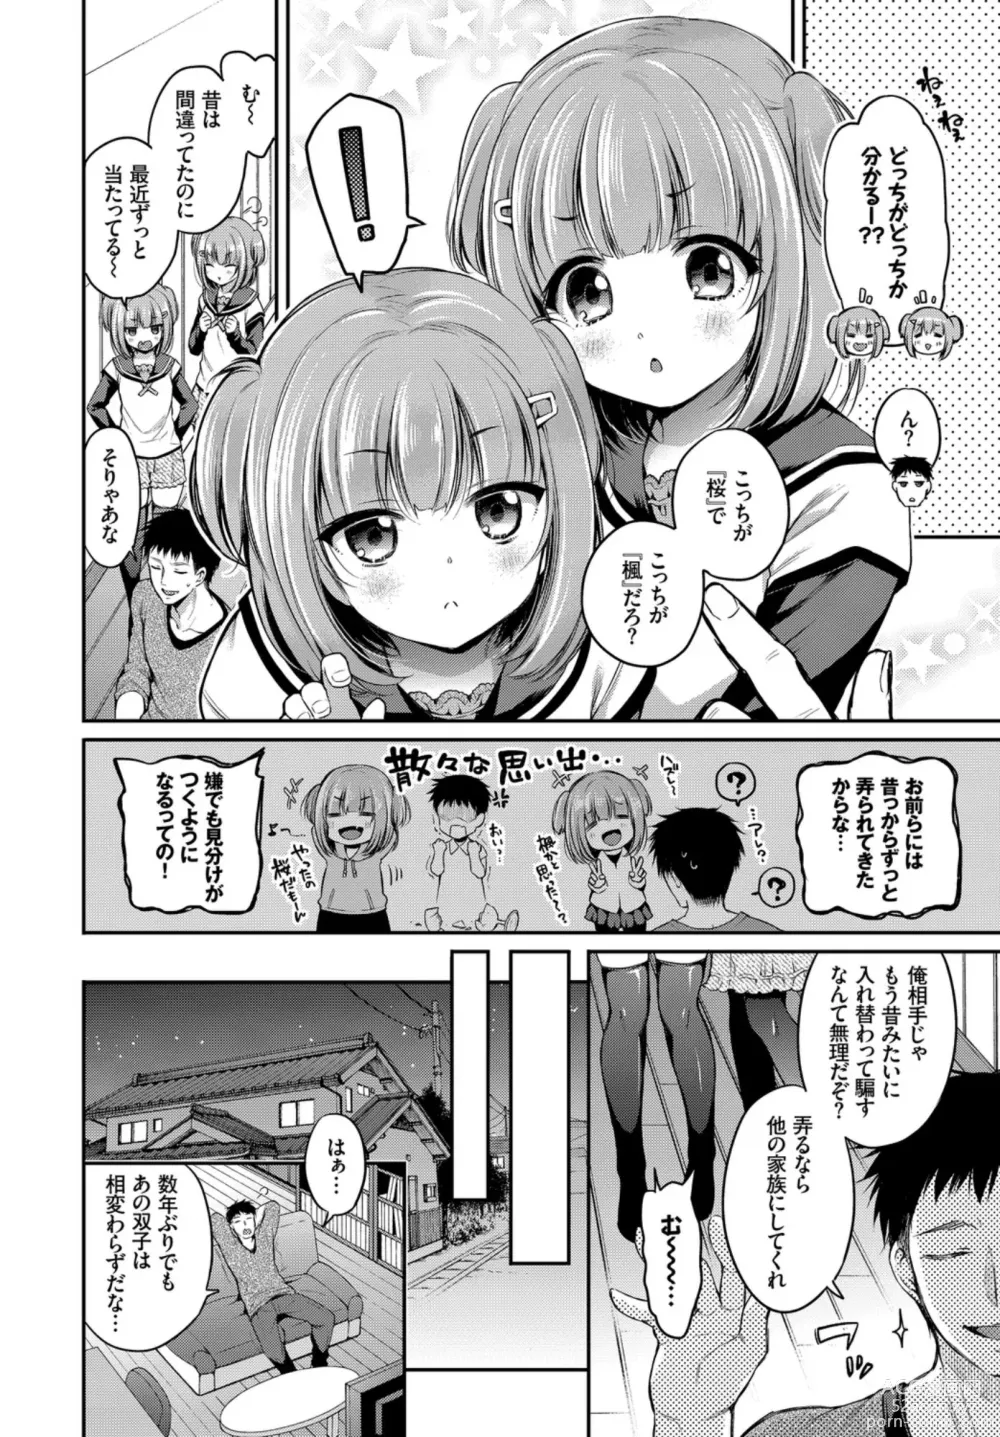 Page 4 of manga Oppai Sand de Shouten Shichao VOL. 2 ~Futago Hen~